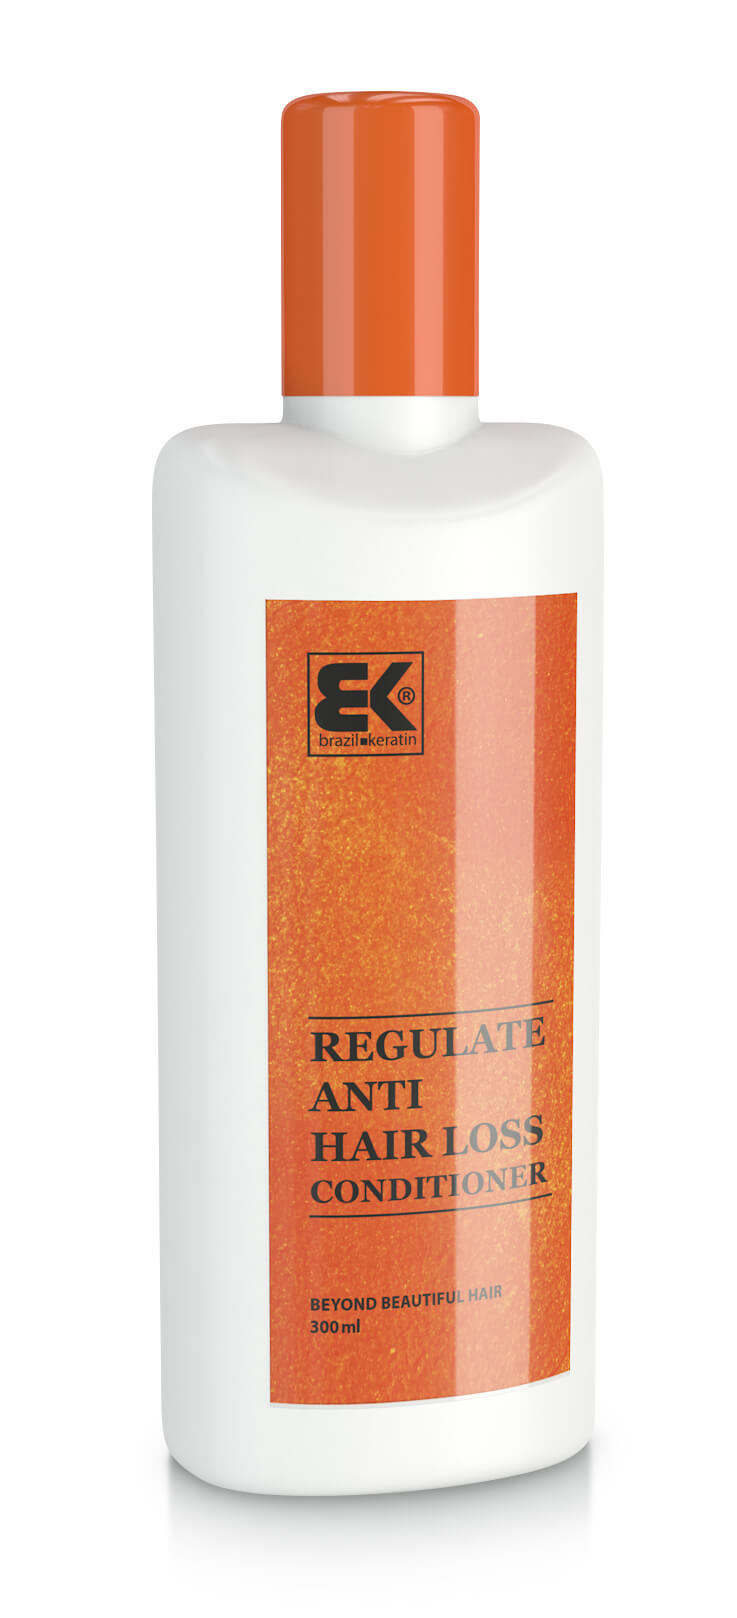 Zobrazit detail výrobku Brazil Keratin Kondicionér s keratinem proti vypadávání vlasů (Regulate Anti Hair Loss Conditioner) 300 ml